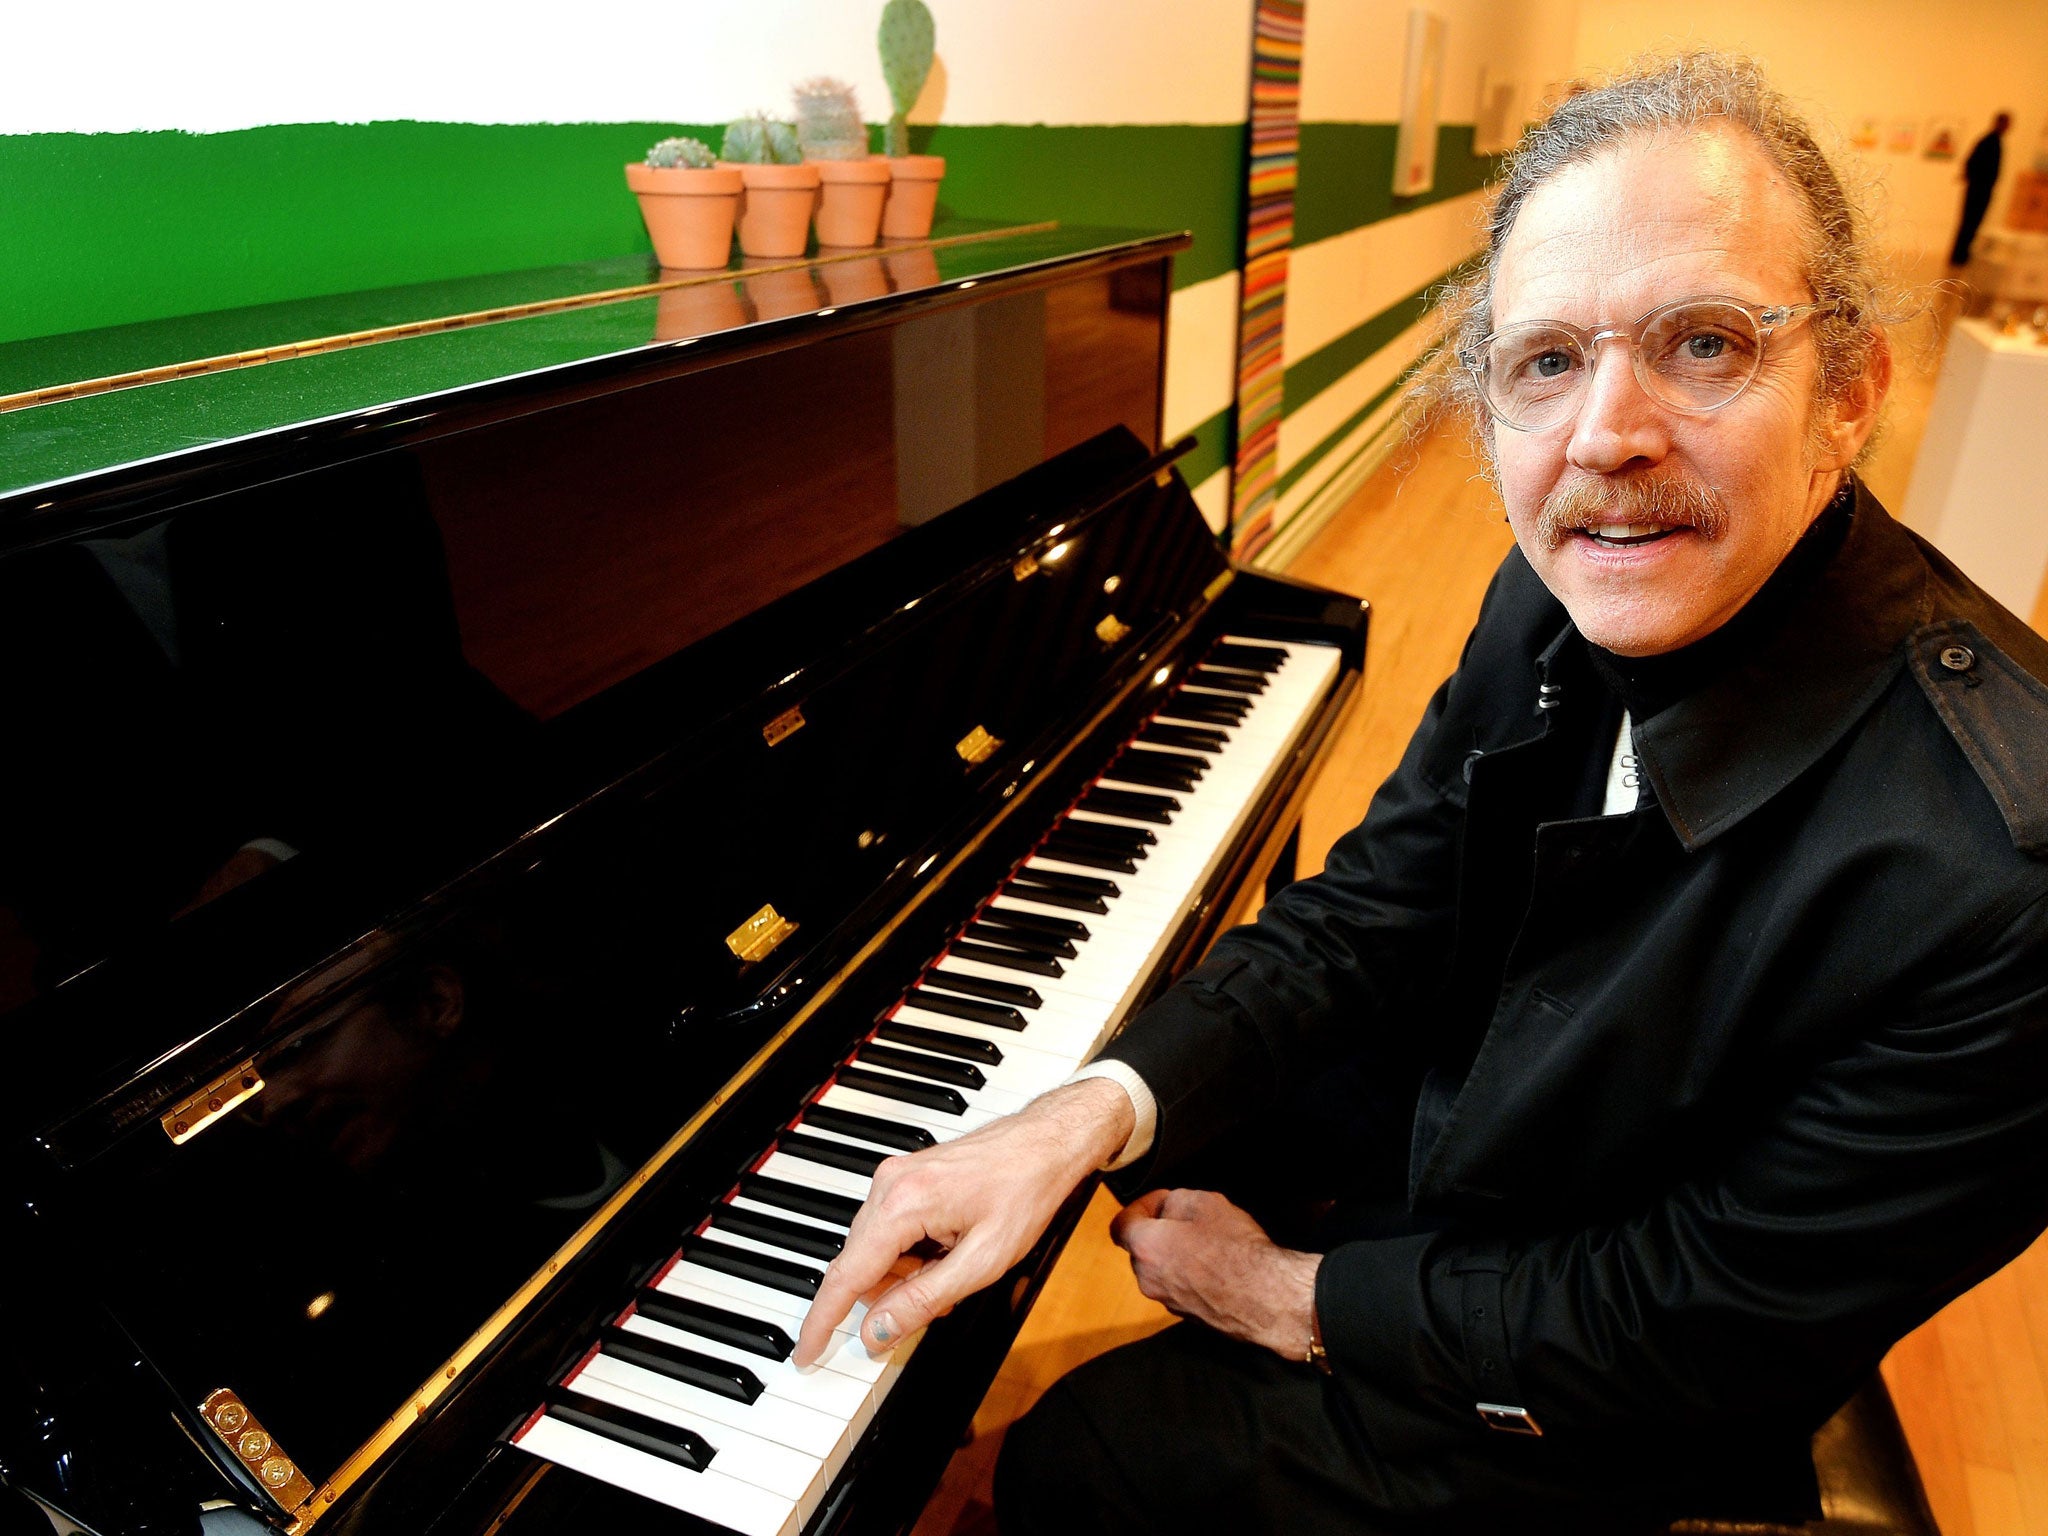 Artist Martin Creed sits at a Piano at the Hayward Gallery